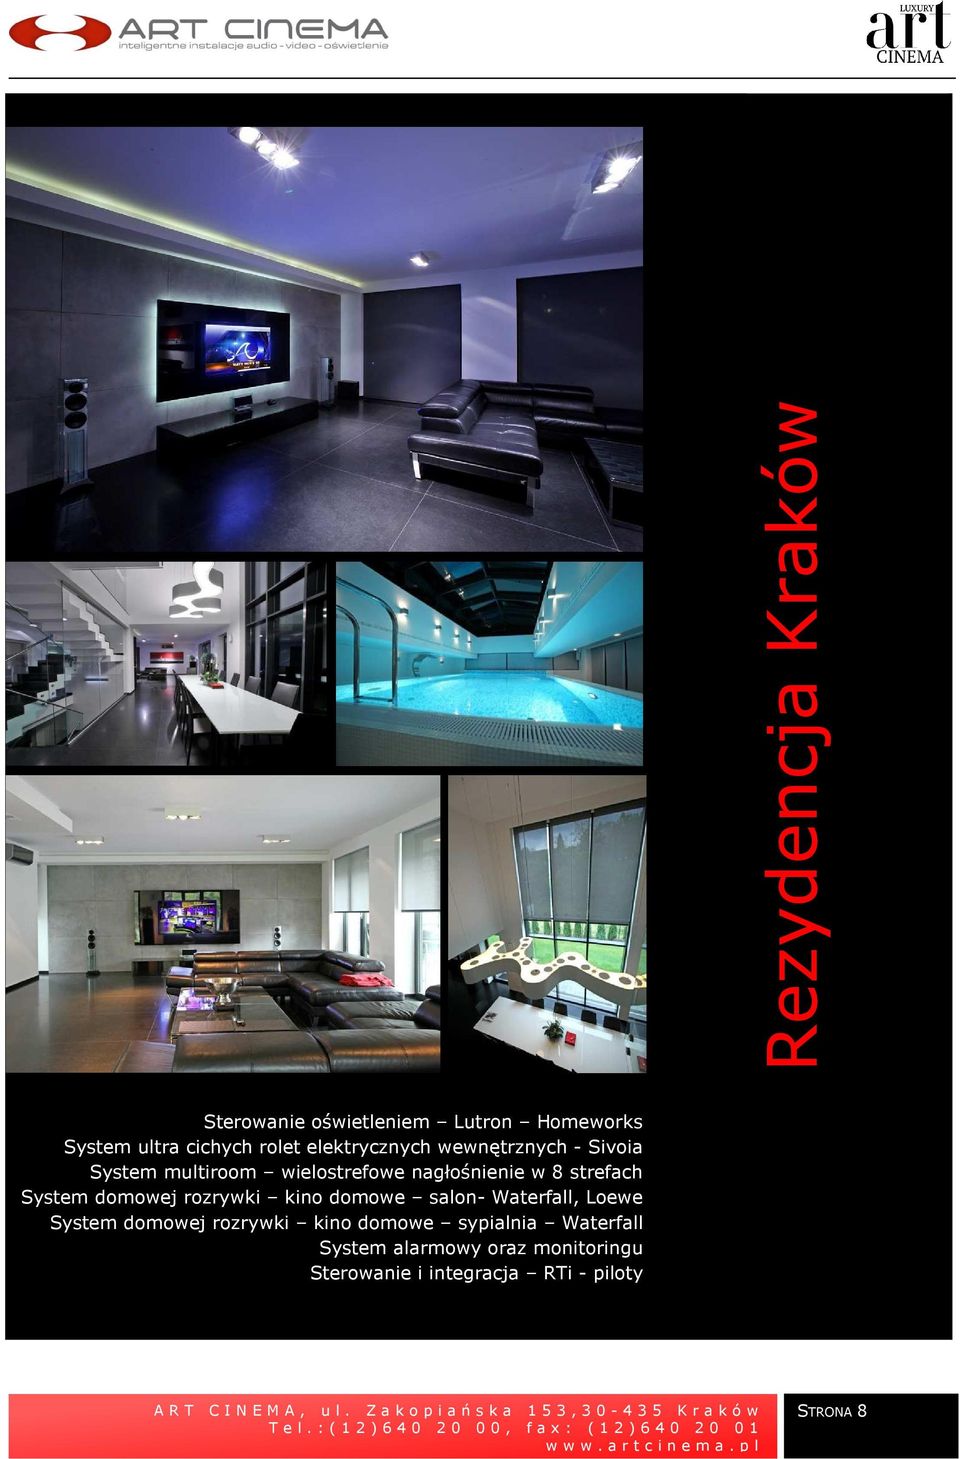 domowe salon- Waterfall, Loewe System domowej rozrywki kino domowe sypialnia Waterfall System alarmowy oraz